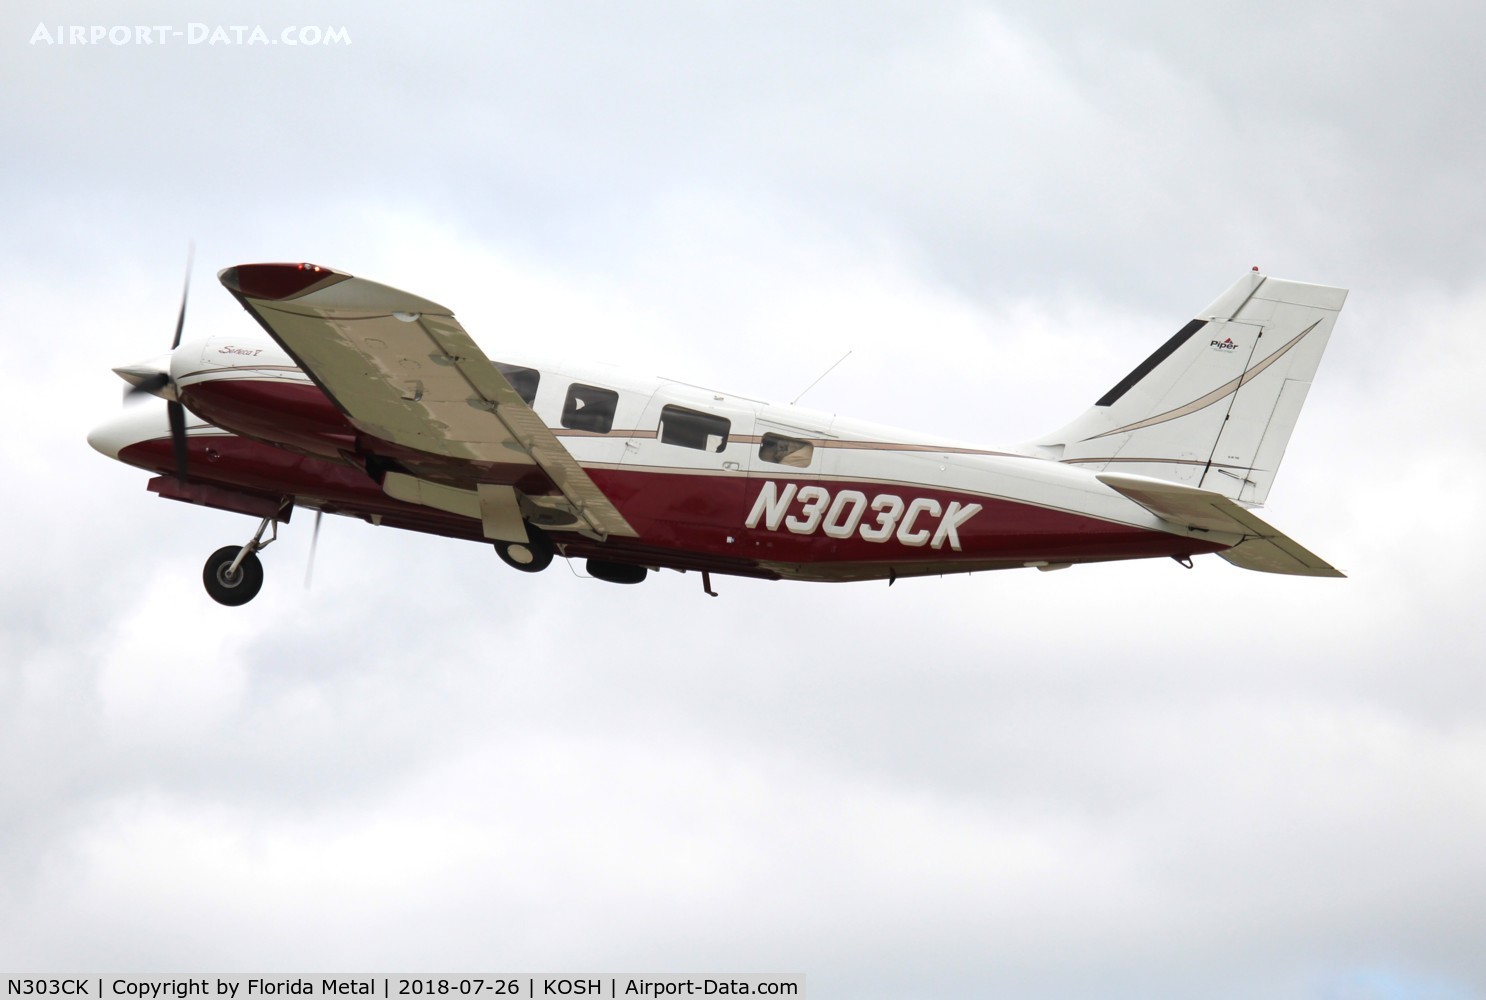 N303CK, 2002 Piper PA-34-200T C/N 3449257, PA-34 zx